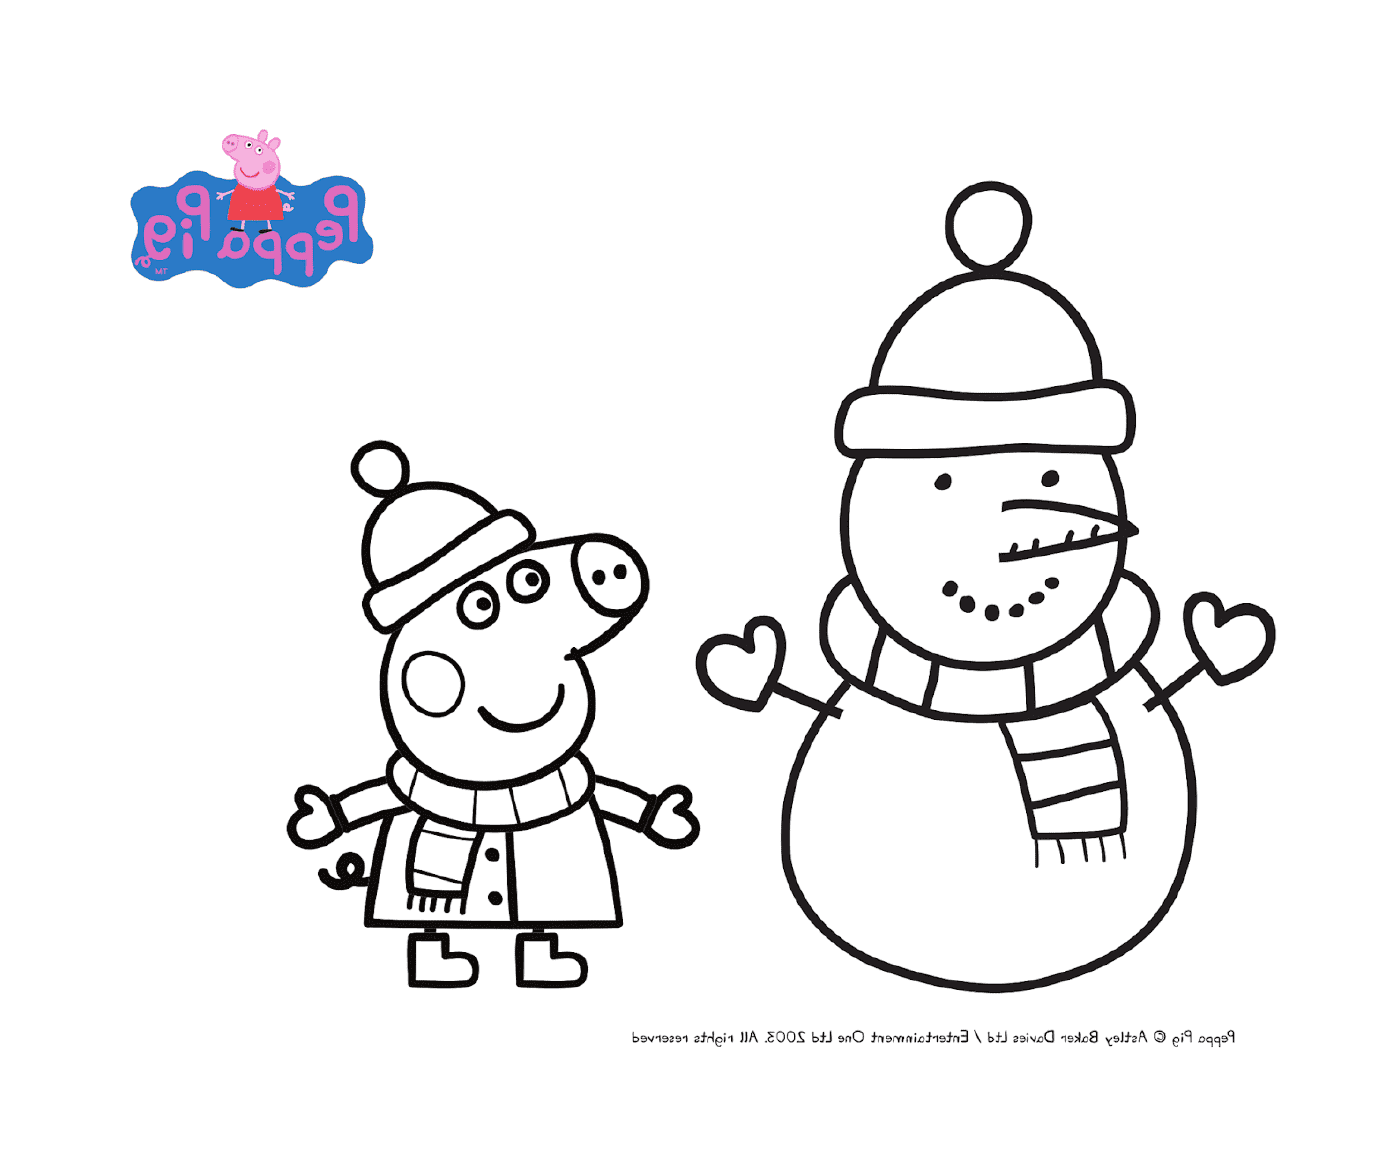   Peppa Pig en costume d'hiver pour Noël 